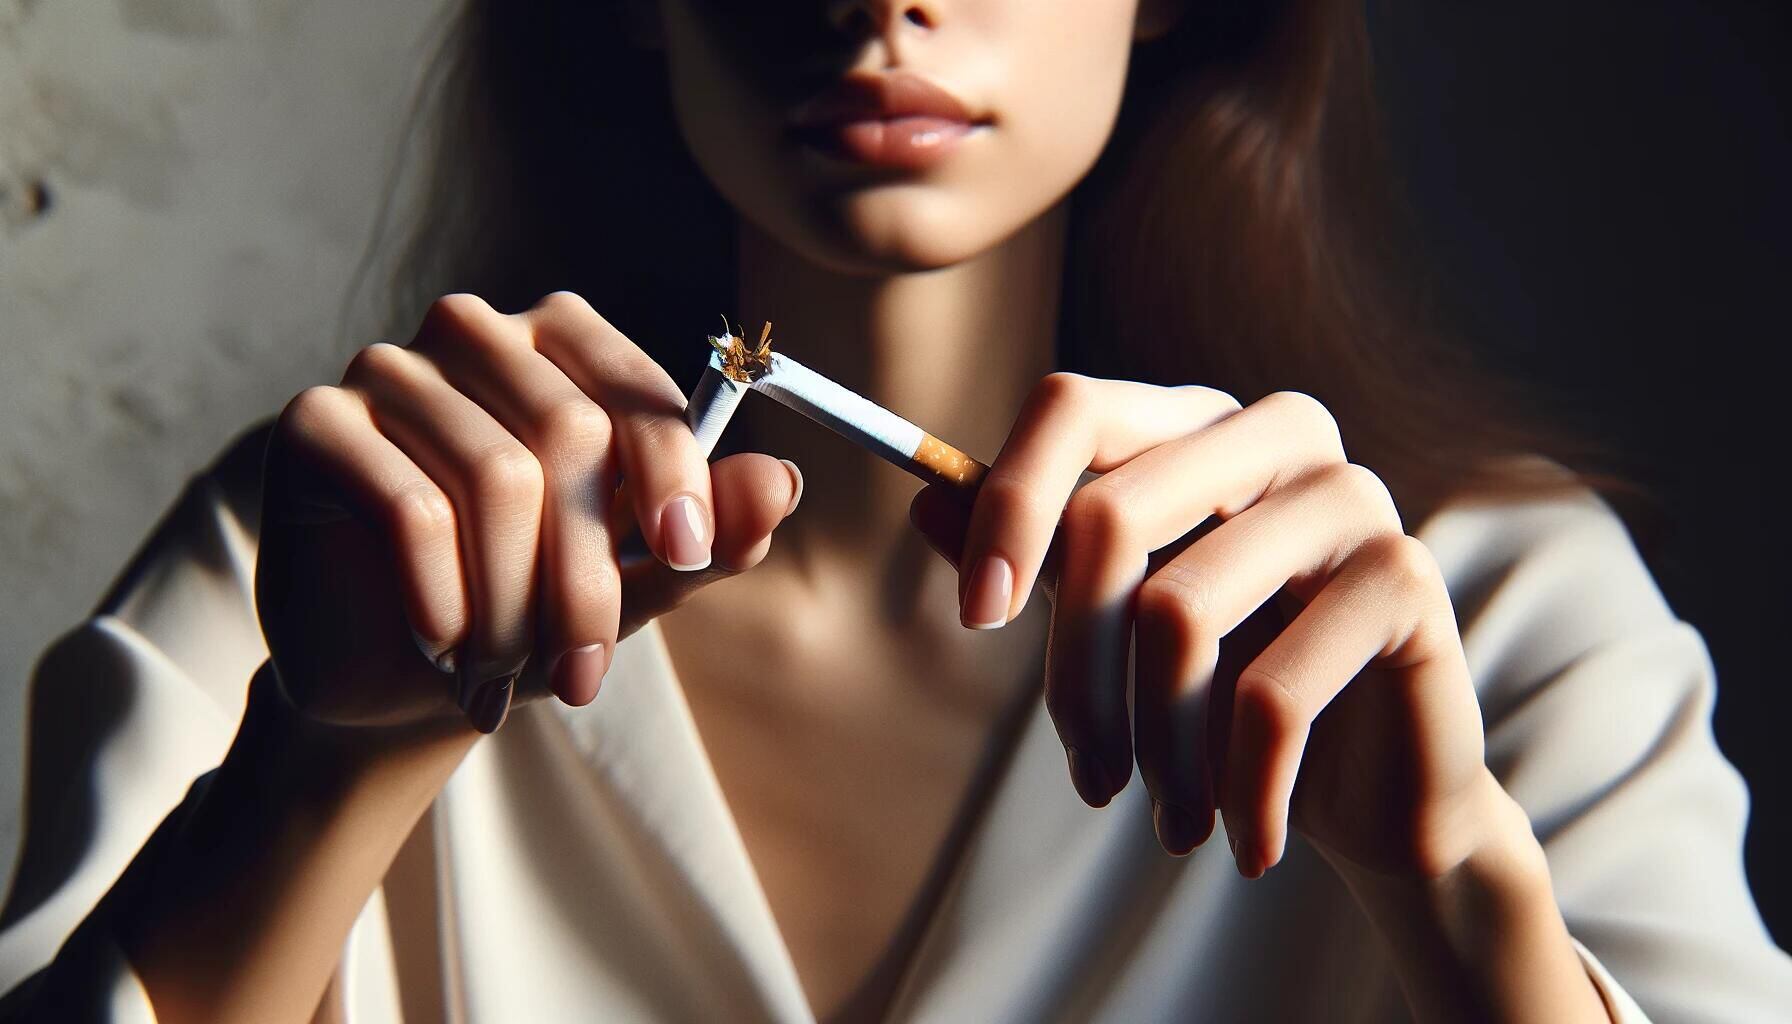 Imagen simbólica: alguien rompe un cigarrillo, marcando el fin del tabaquismo. Un paso hacia pulmones más saludables y una vida libre de humo. (Imagen ilustrativa Infobae)